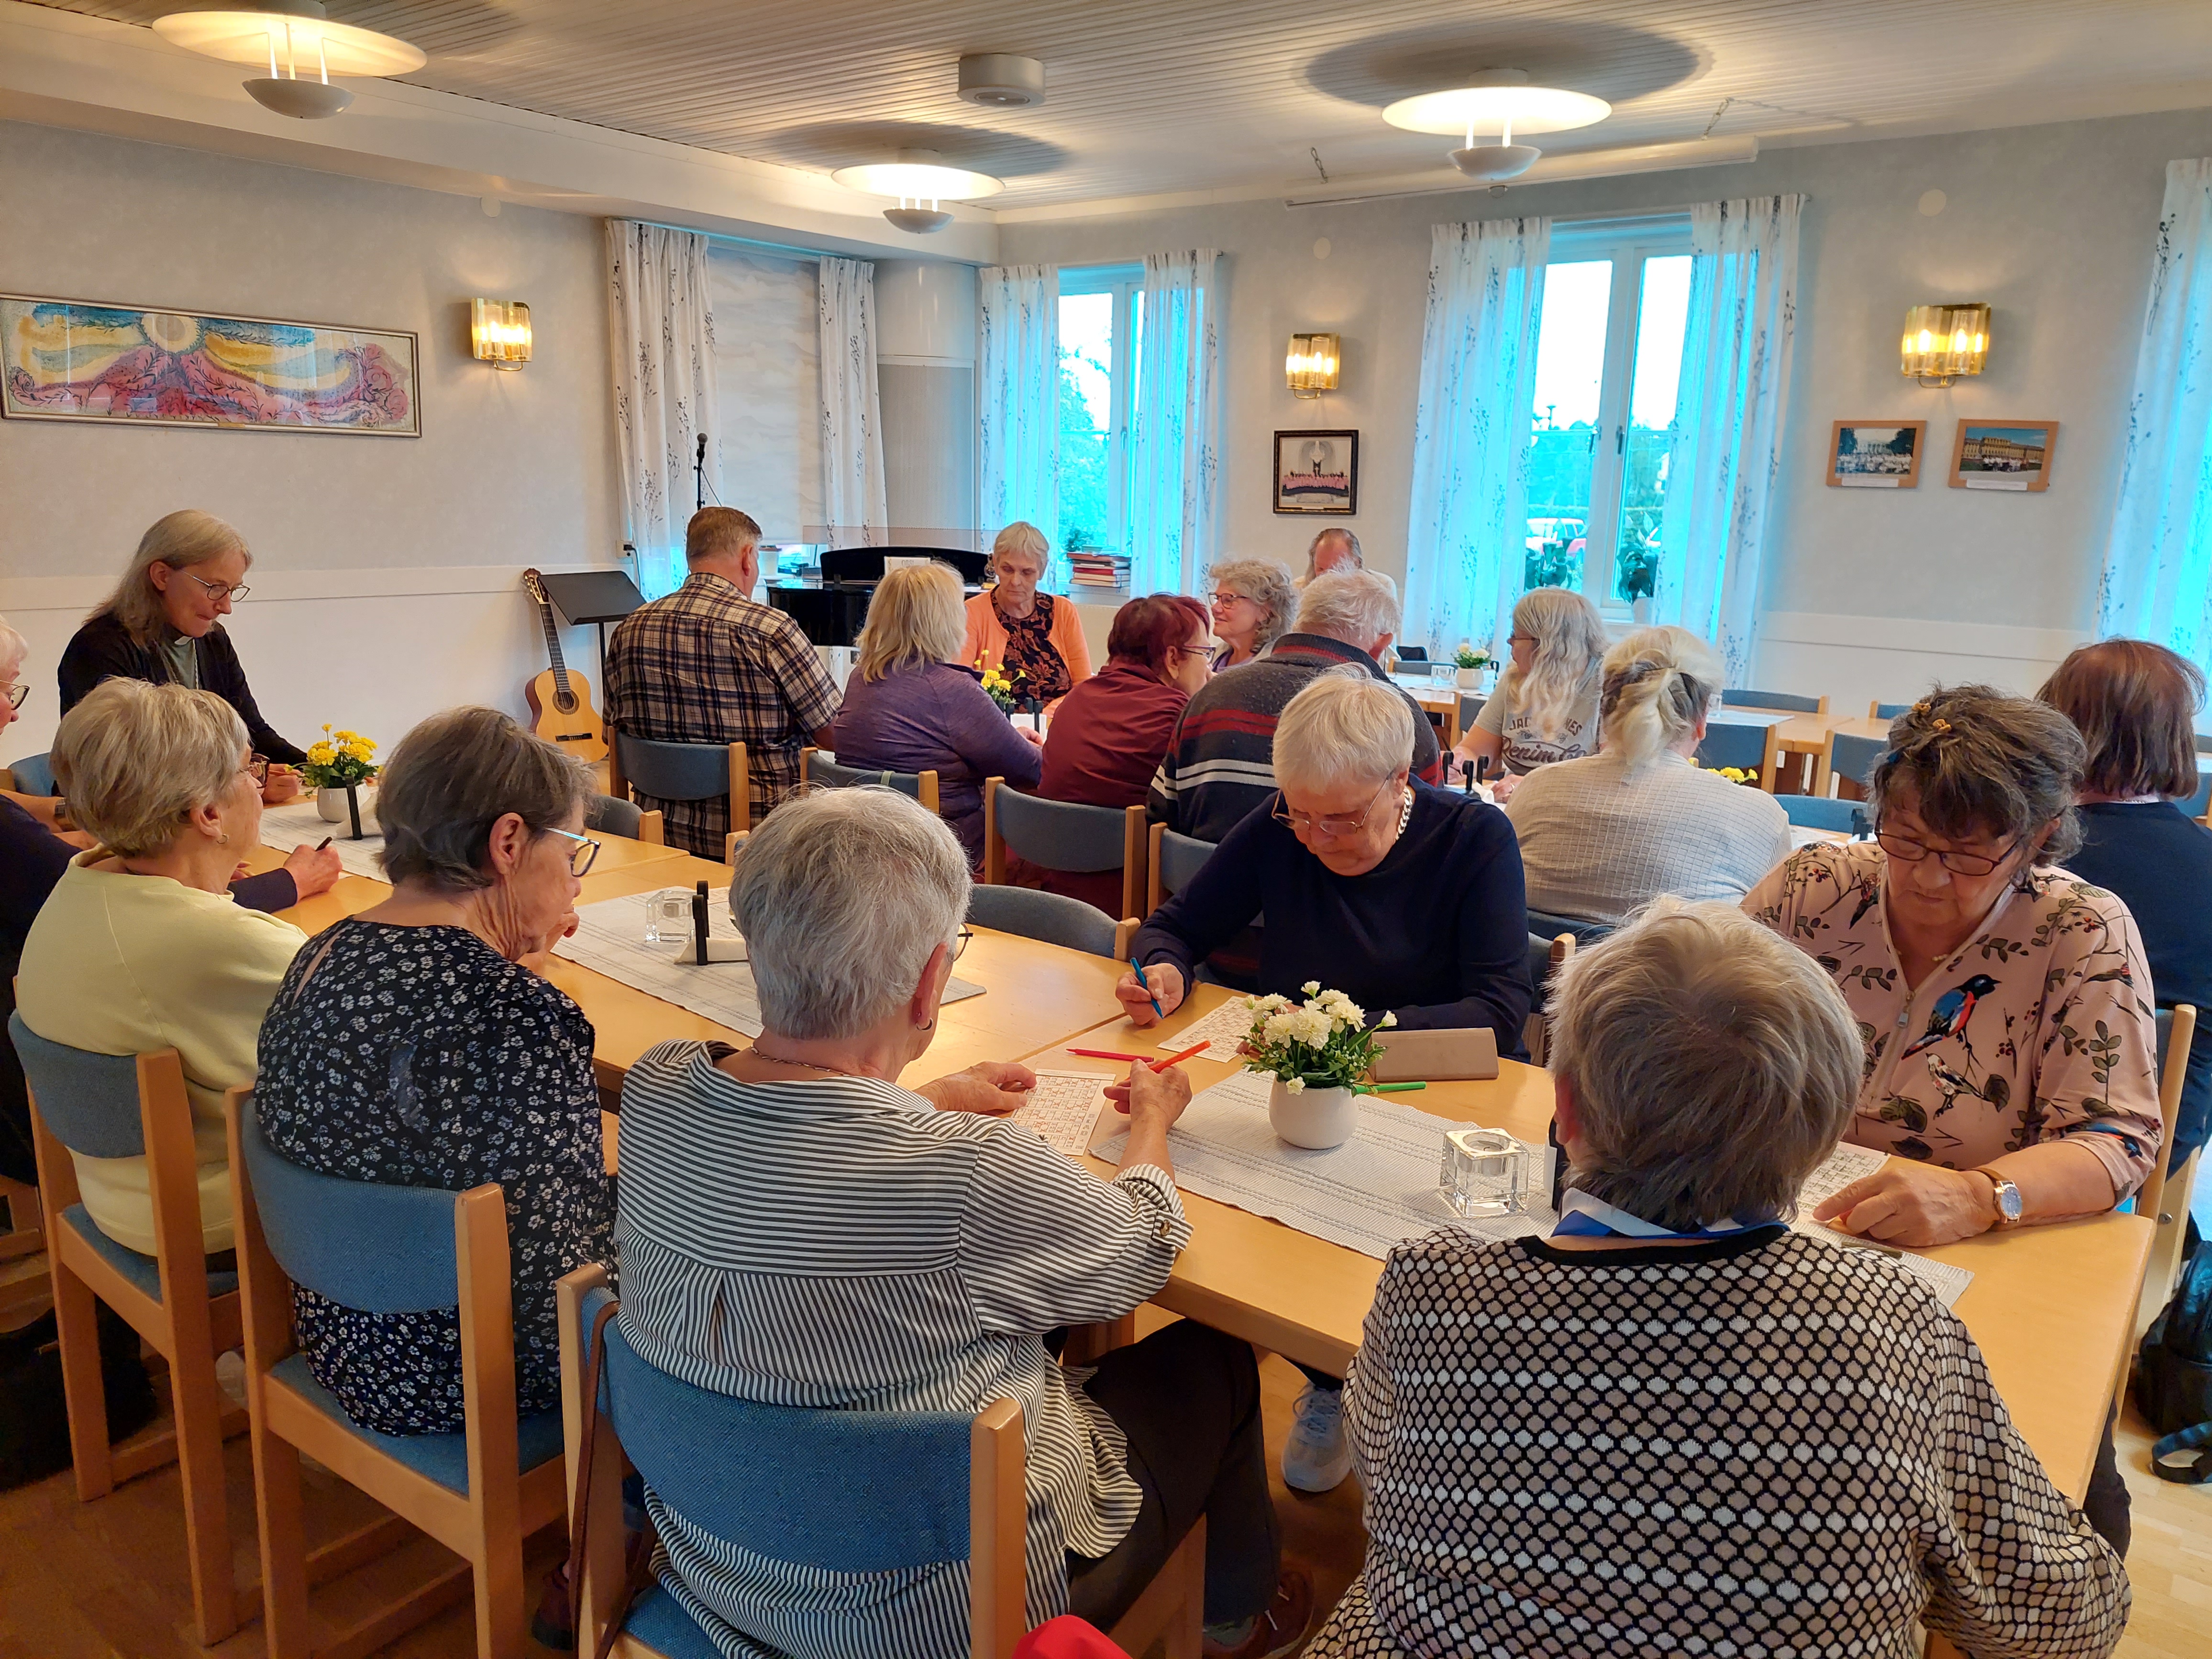 Koncentrerade bingospelare i Ytterlännäs sockenstuga under ett café Livslust